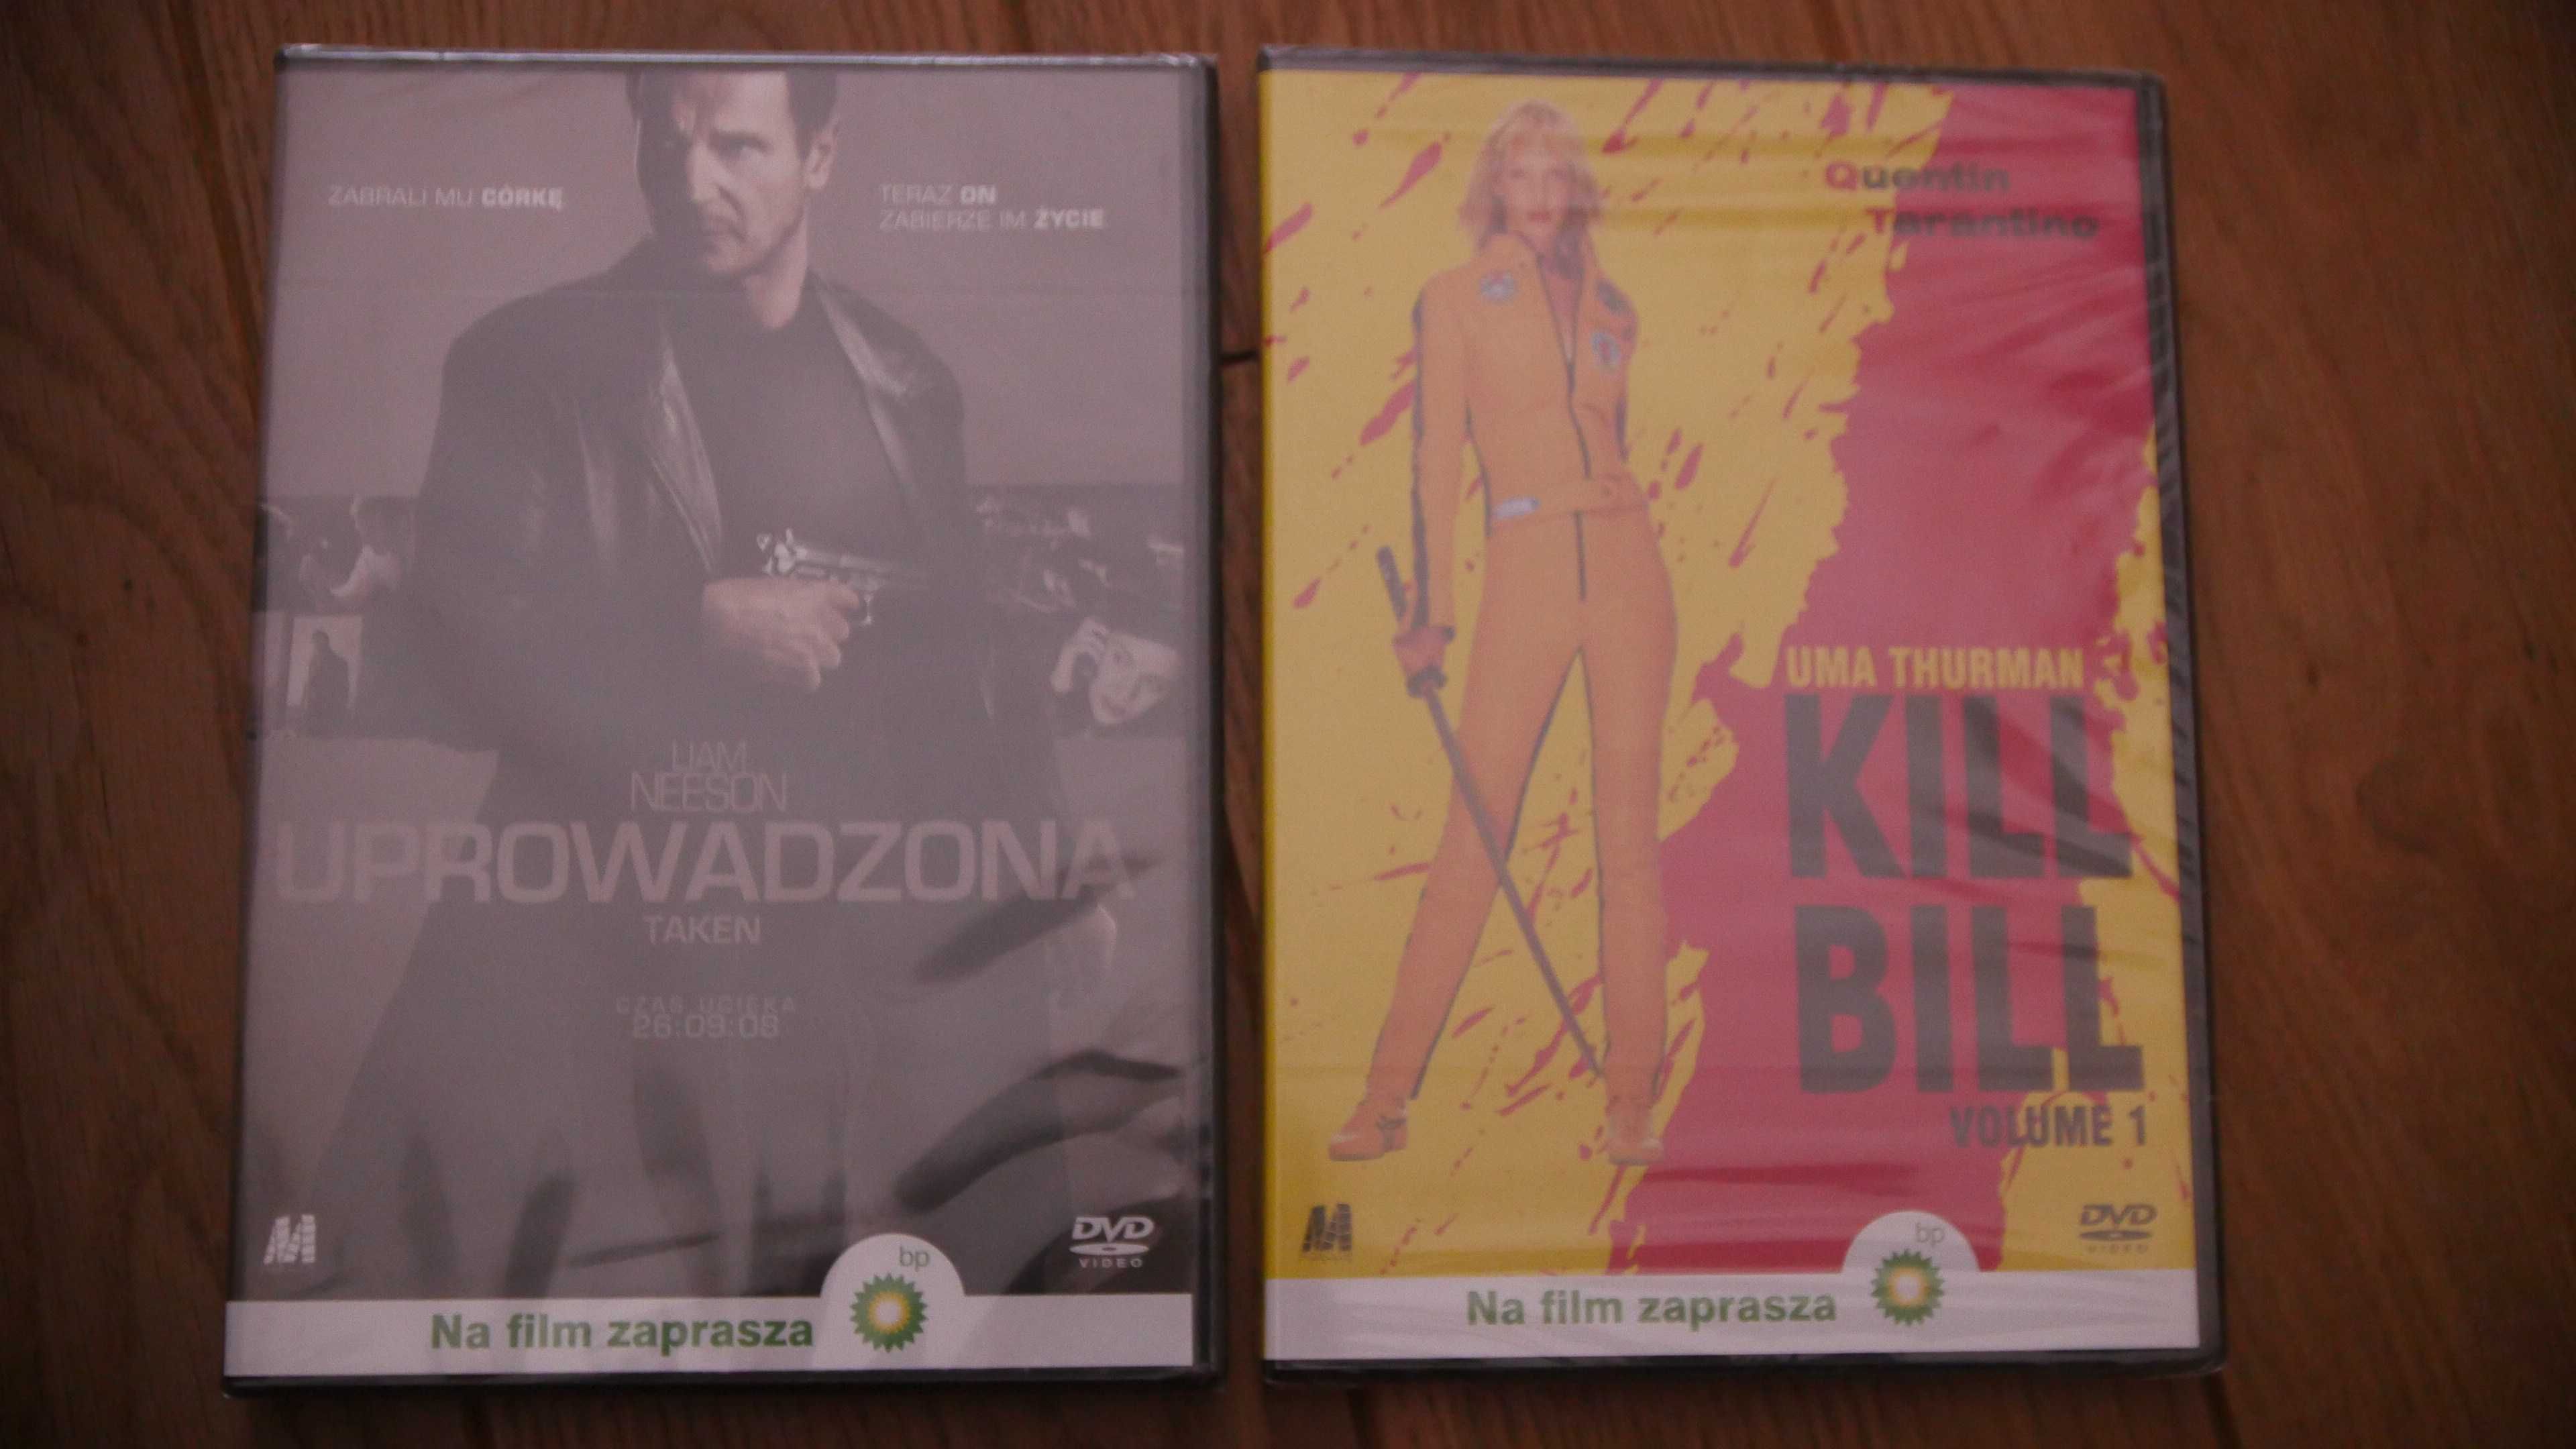 Uprowadzona / Kill Bill - 2 filmy DVD